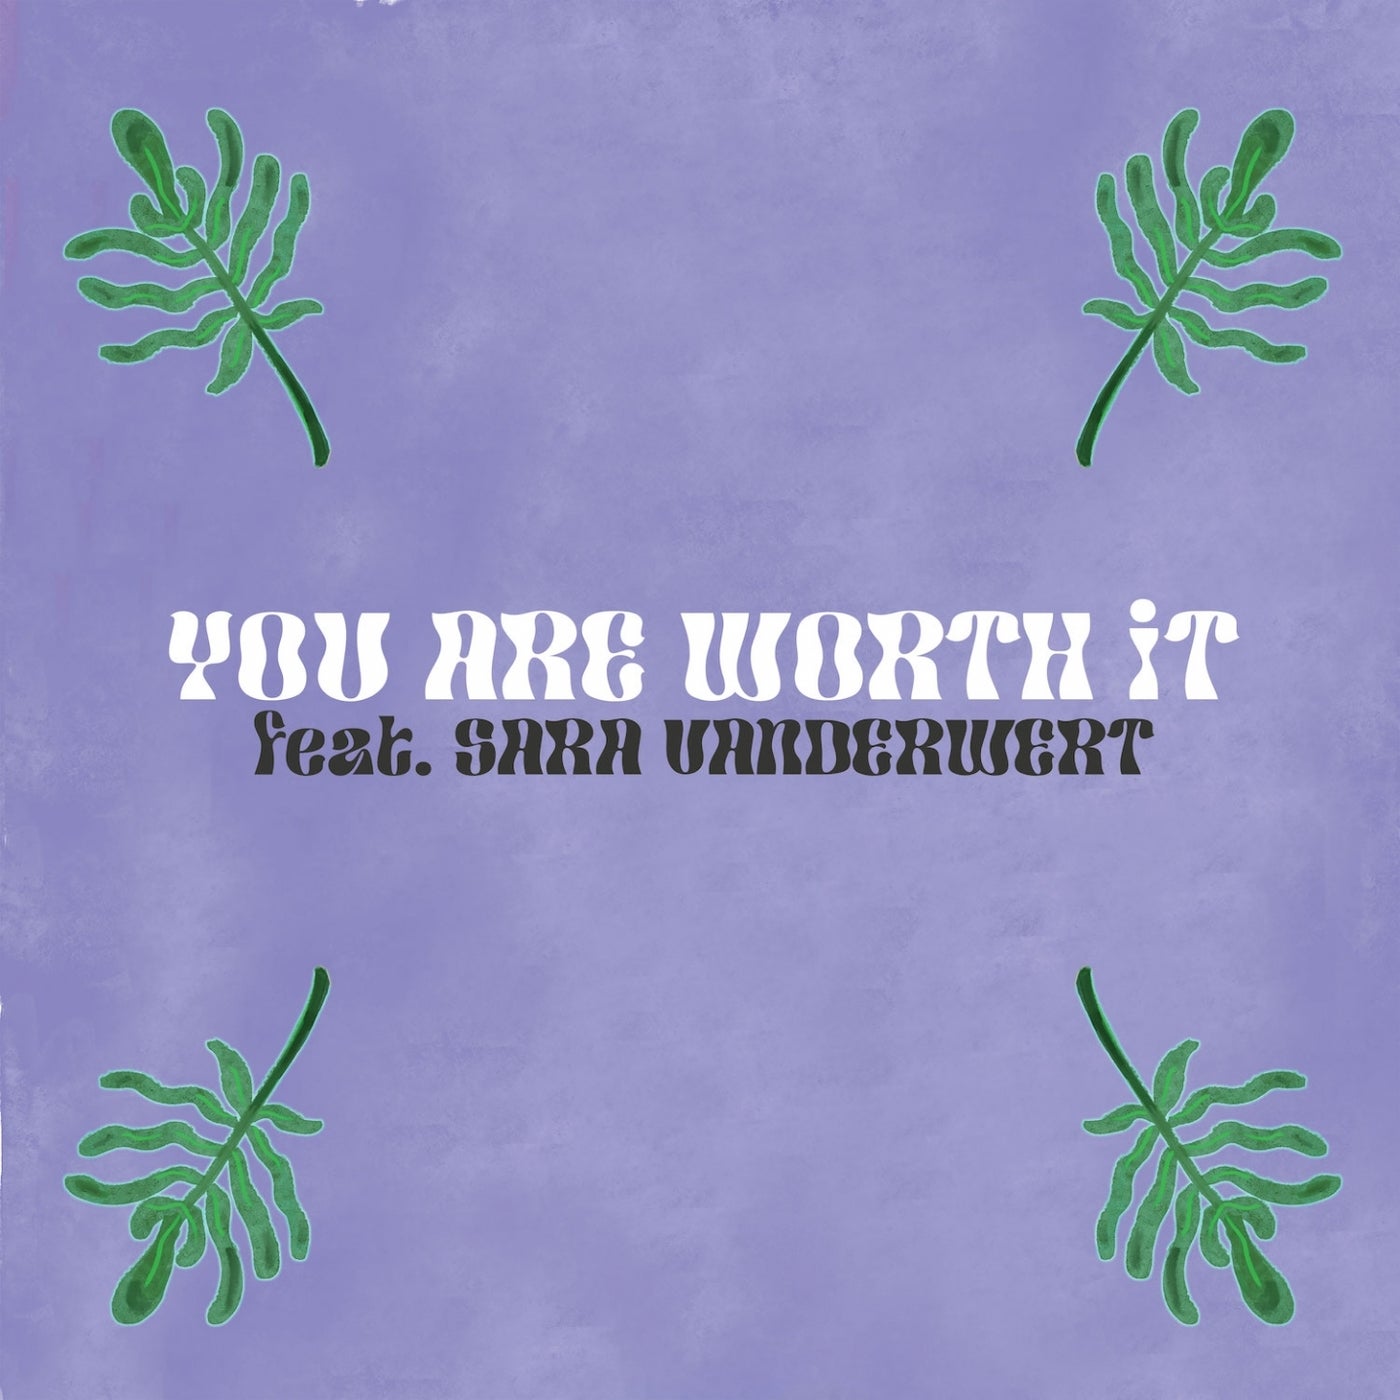 You Are Worth It (feat. Sara Vanderwert)